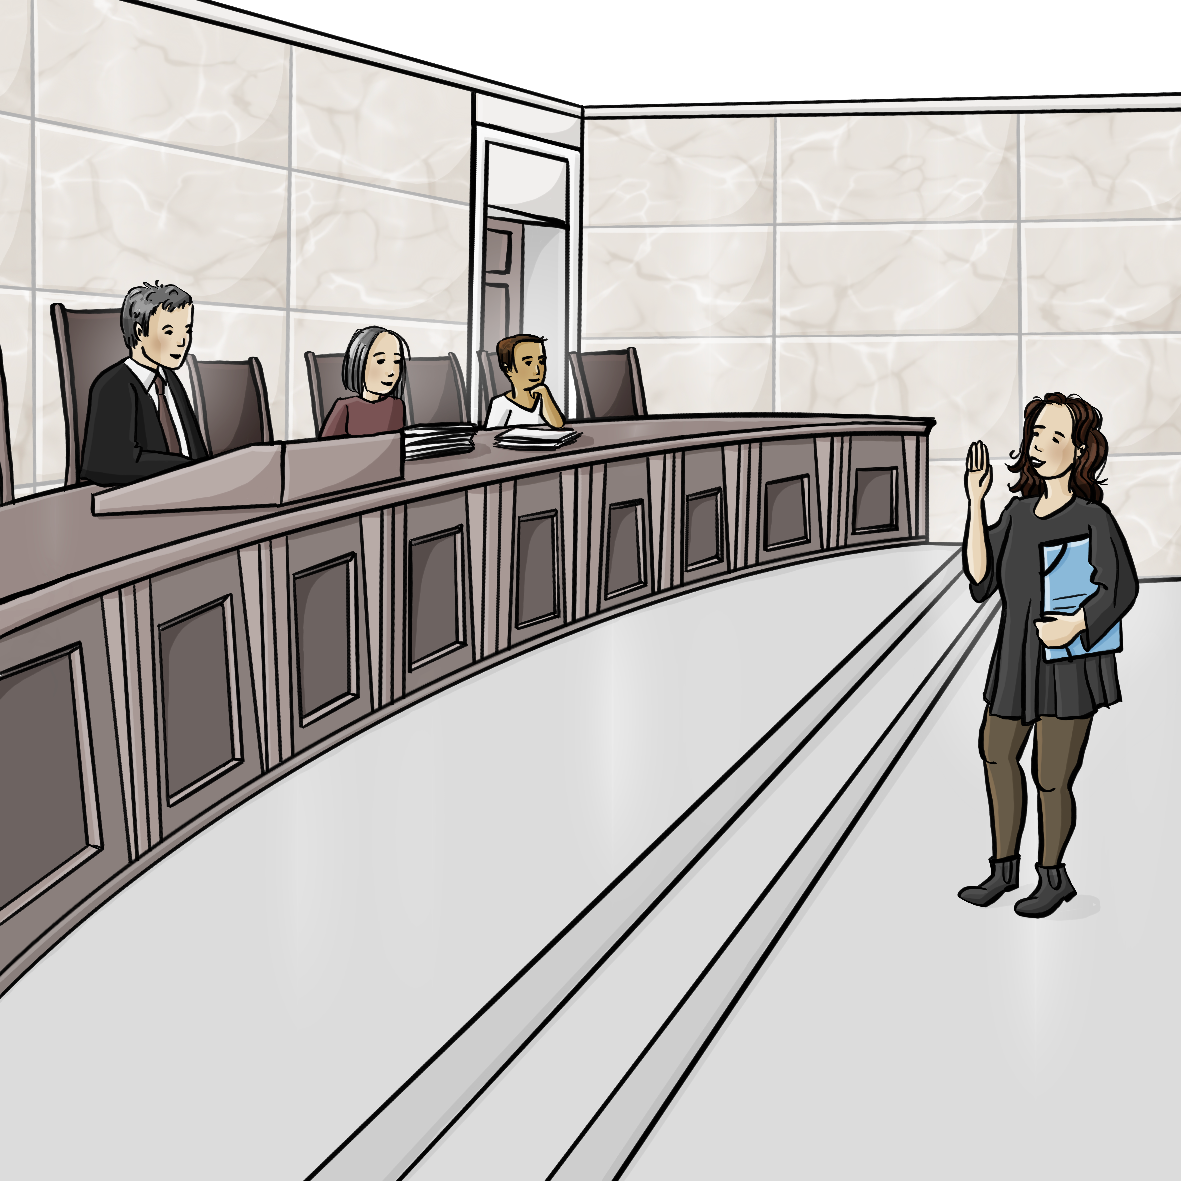 Eine Frau steht in einem Gerichtssaal. Sie hält eine Mappe unter dem Arm und streckt eine Hand in die Höhe. Hinter dem Richtertisch sitzen drei Richter und Richterinnen. 